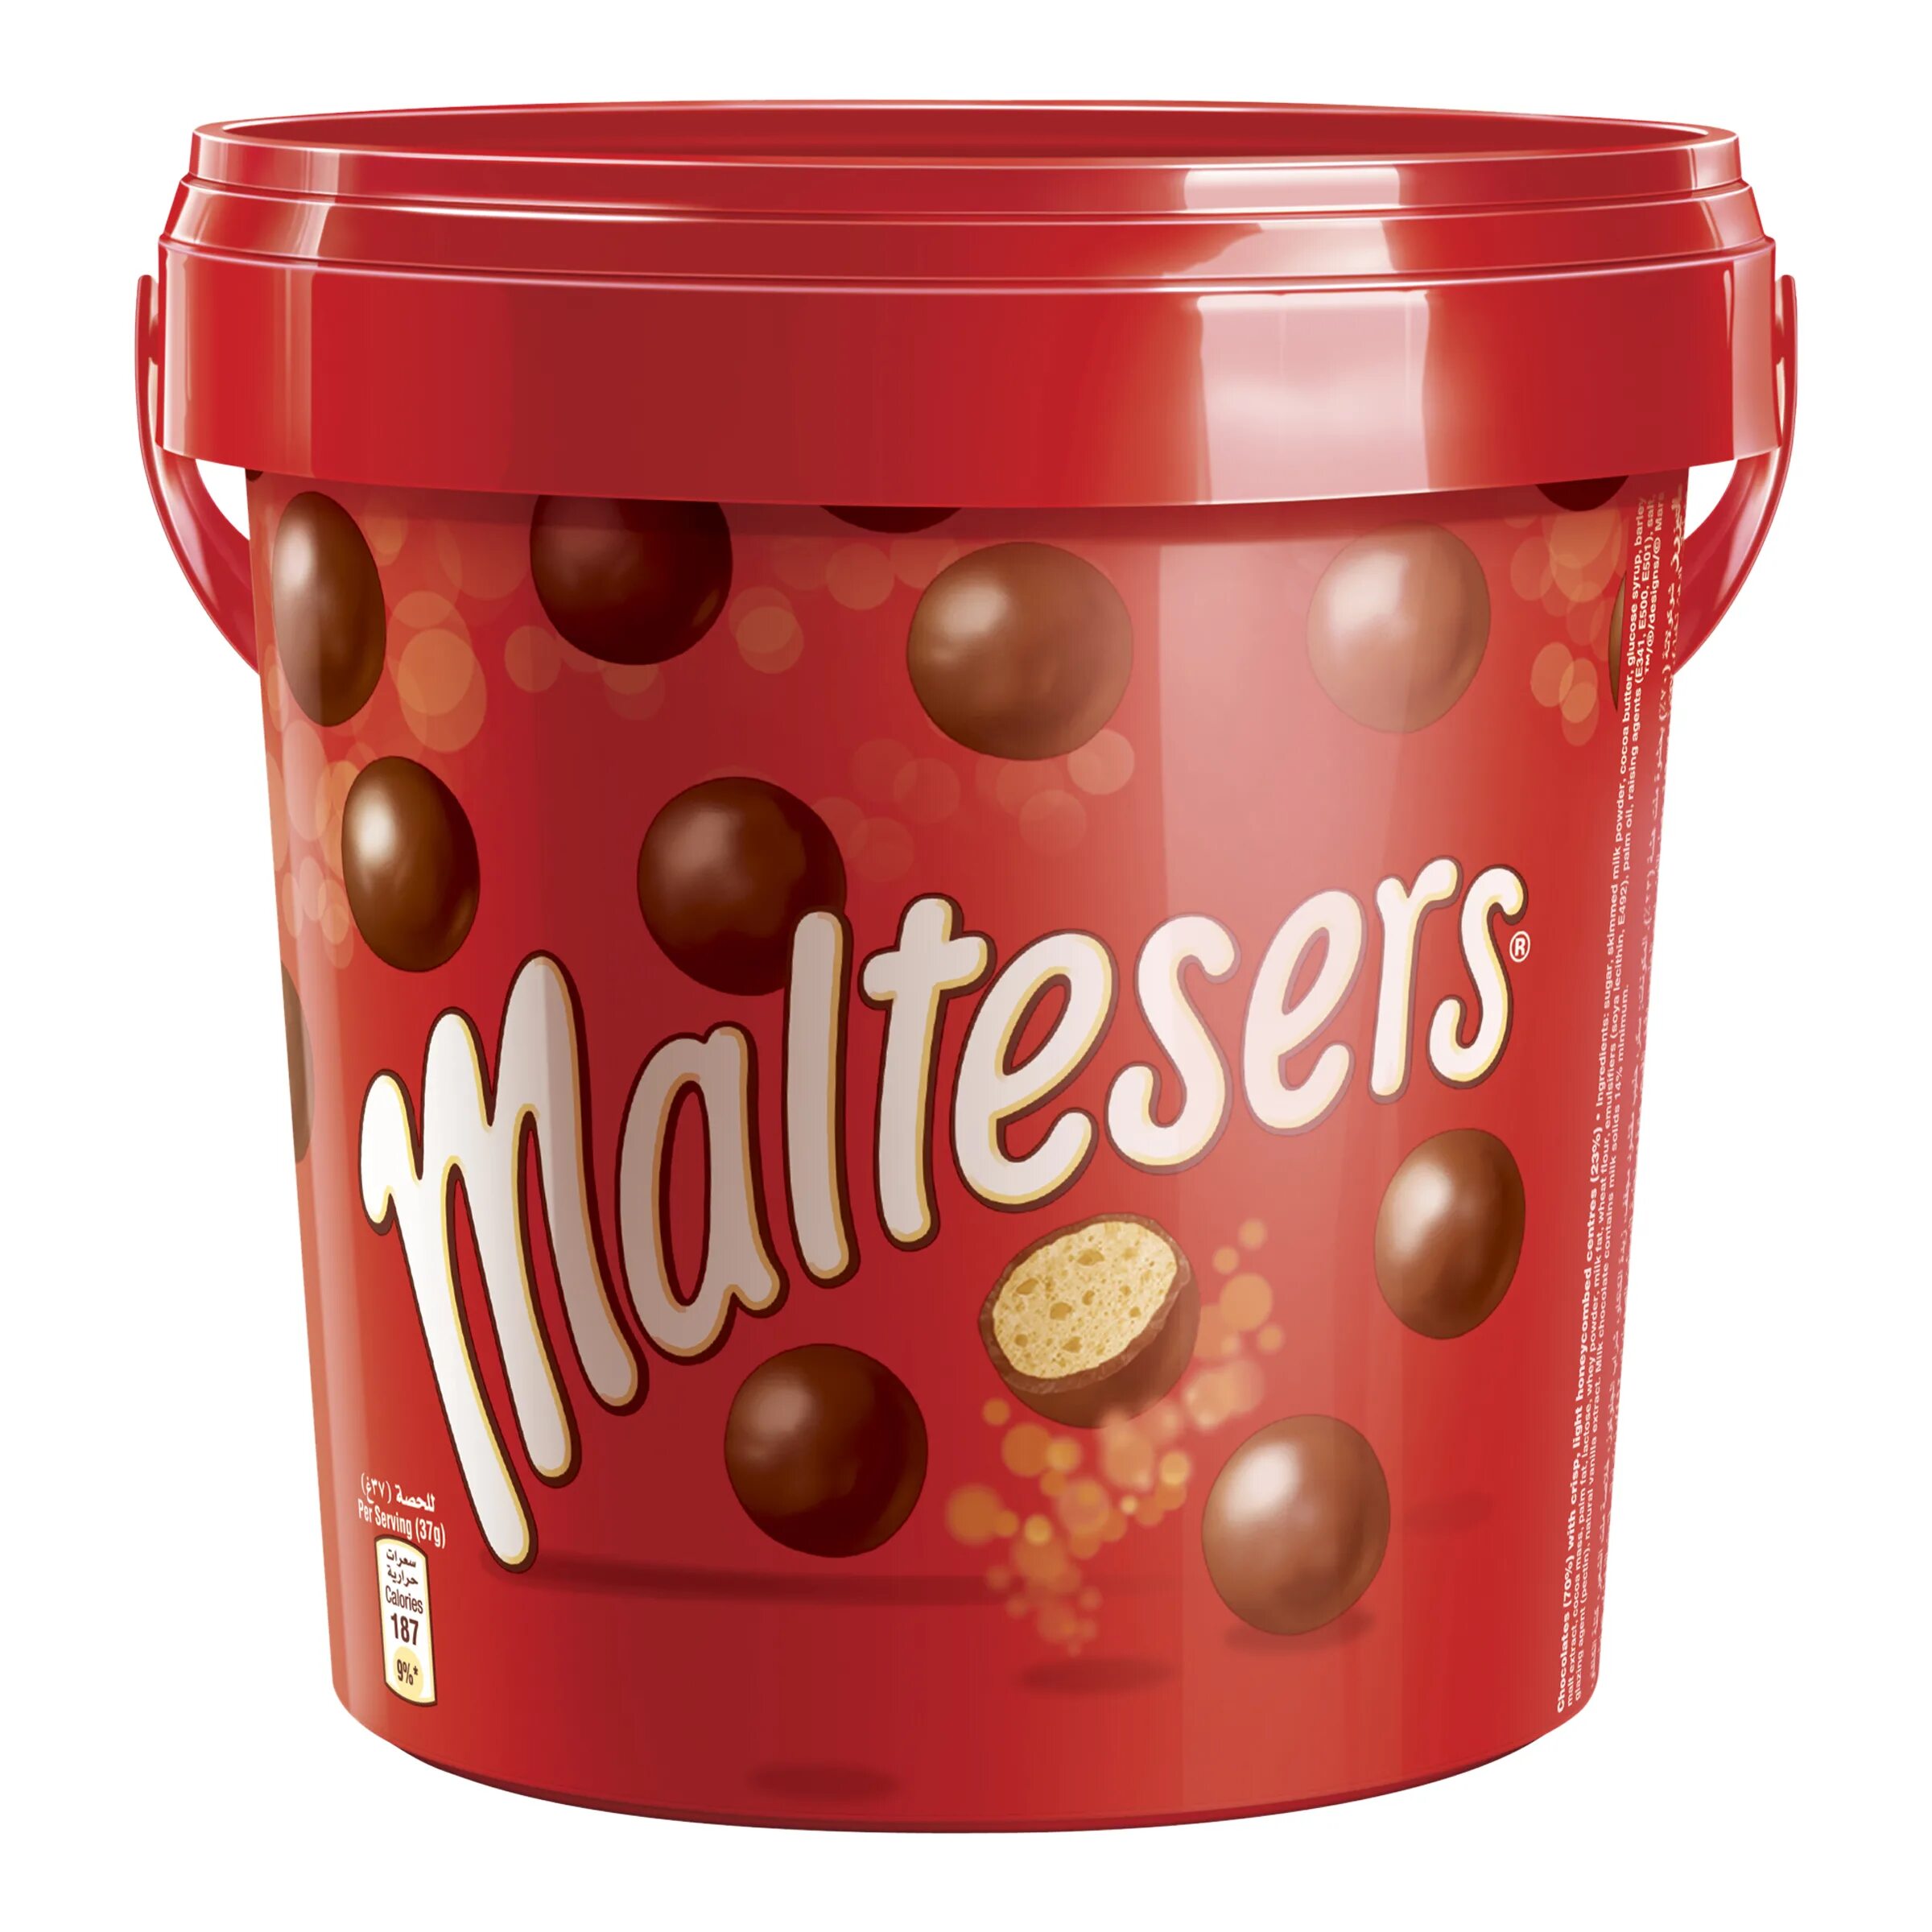 Maltesers шоколадные шарики 37 гр. Конфеты шоколадные шарики Мальтизерс. Maltesers драже шоколадные шарики. Конфеты Mars Maltesers. Шарики криспи